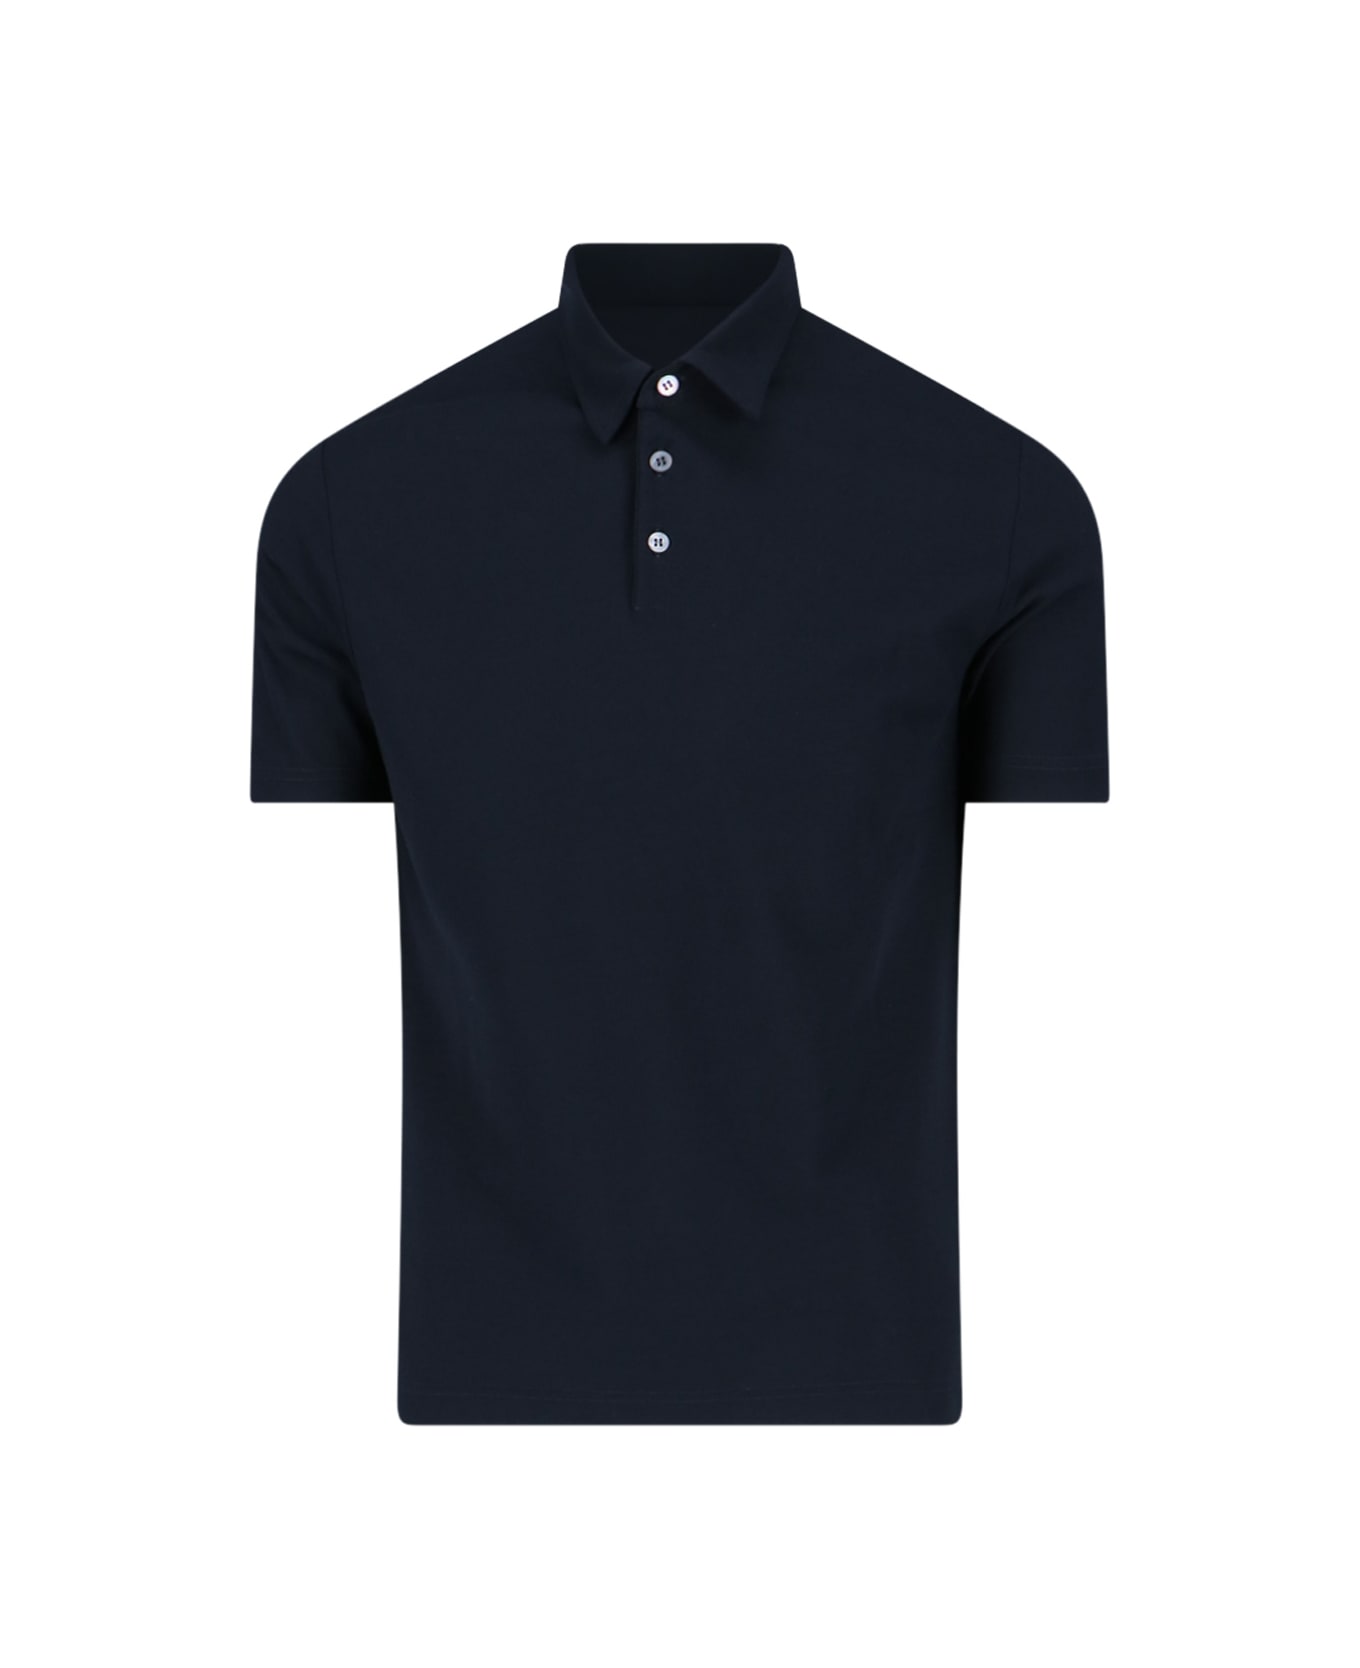 Zanone Basic Polo Shirt - Blue